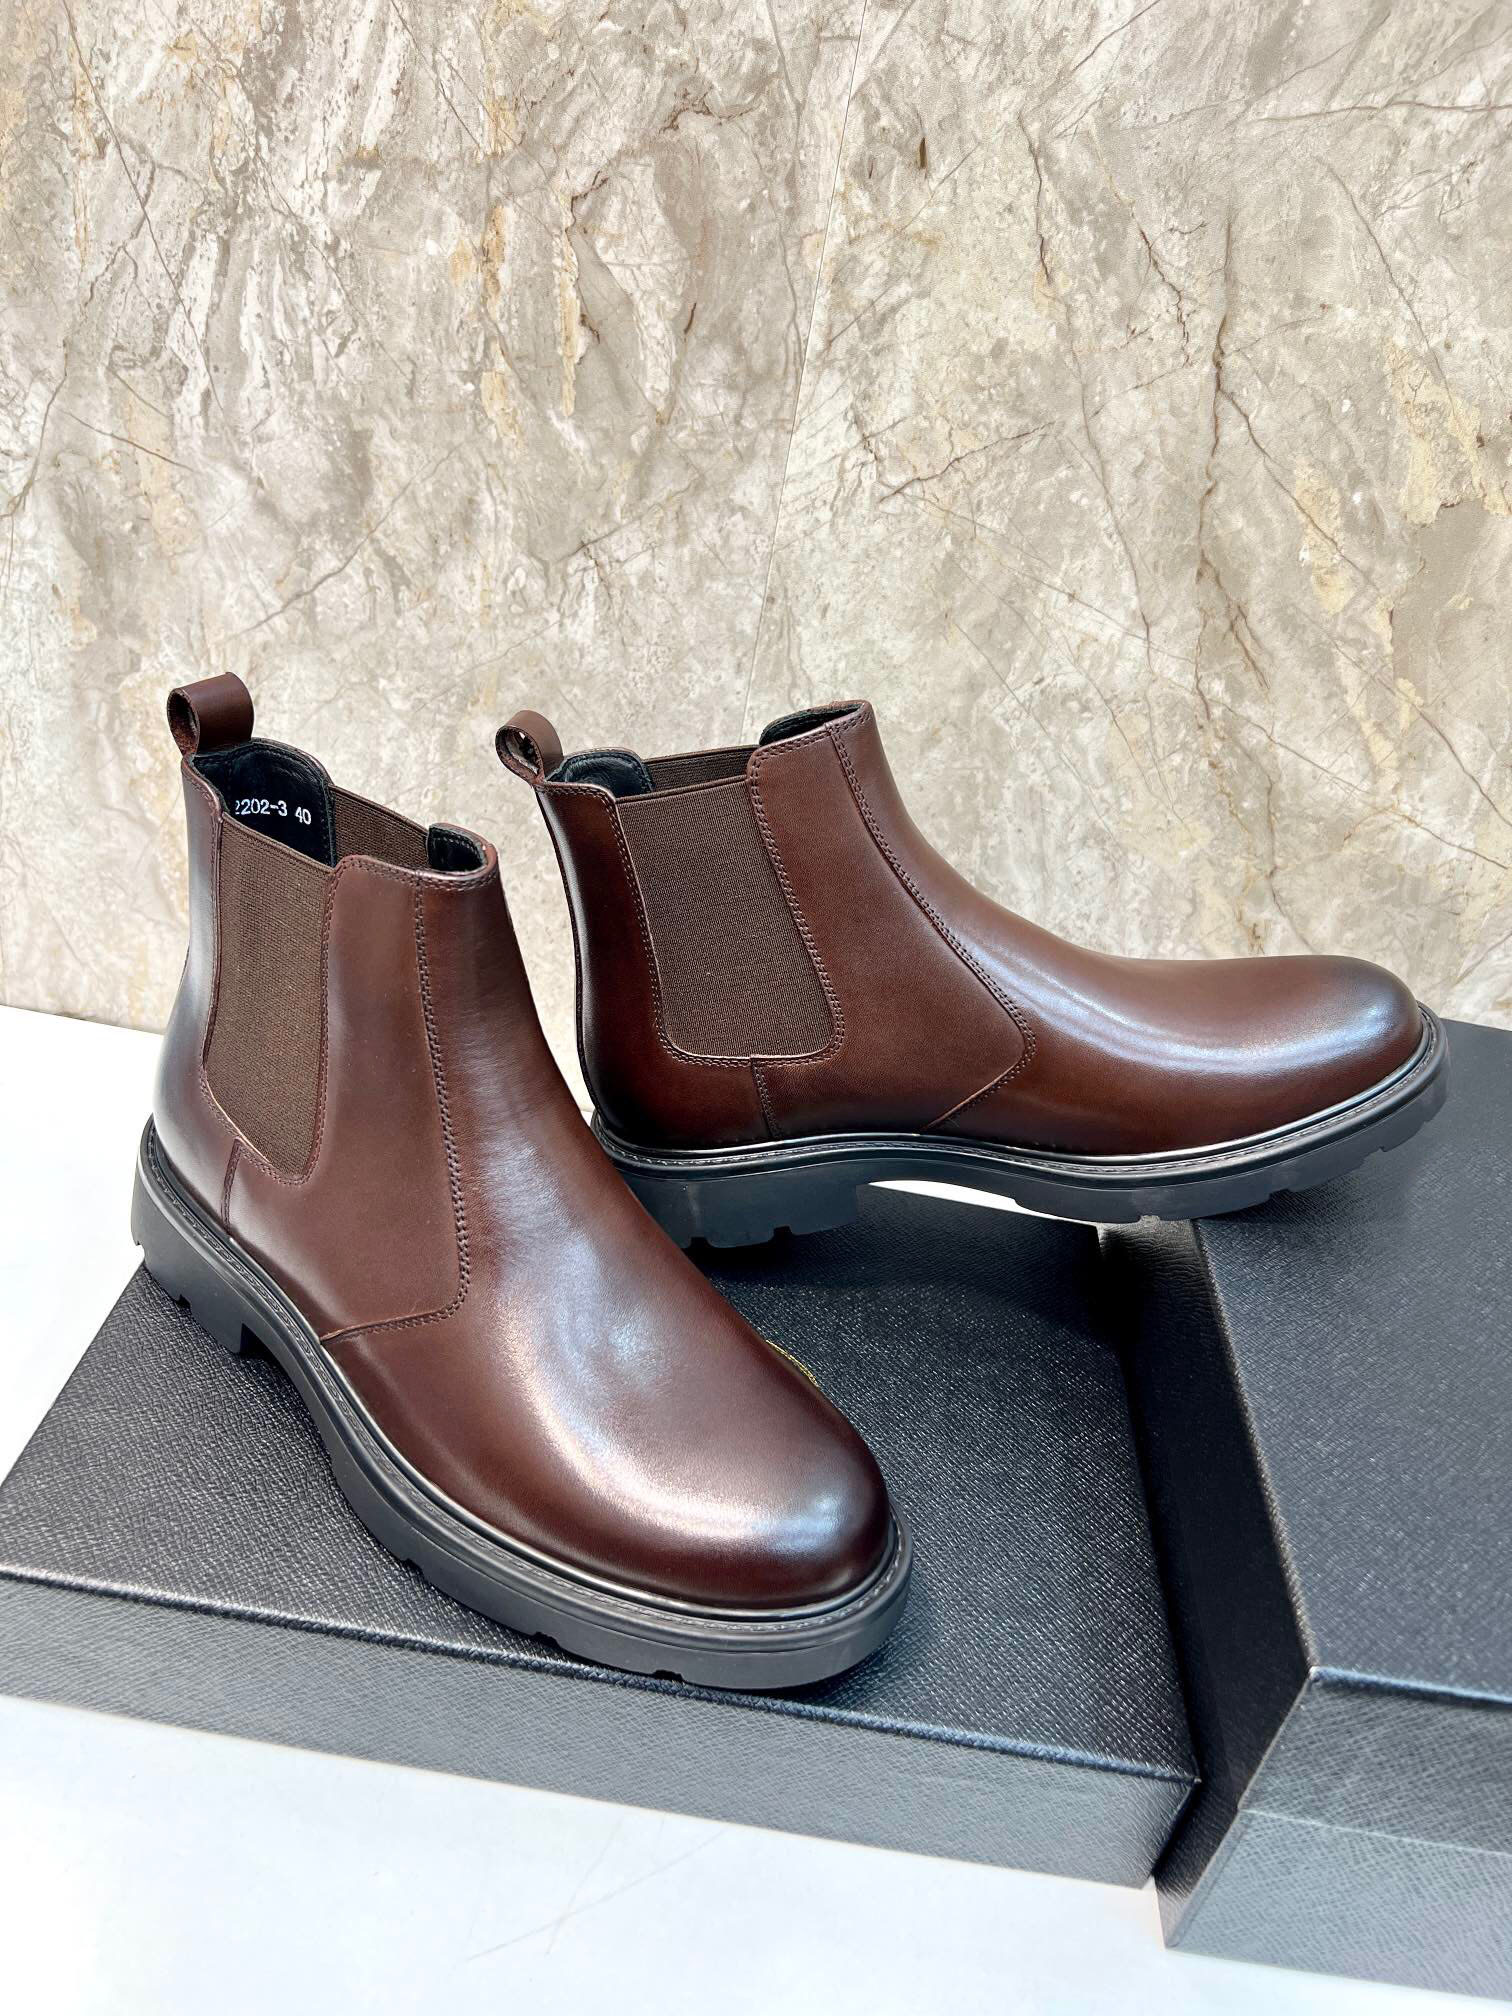 Erkek ayak bileği botları kış moda orijinal deri parti elbise ayakkabıları erkek marka gündelik klasik platform motosiklet bot boyutu 38-45